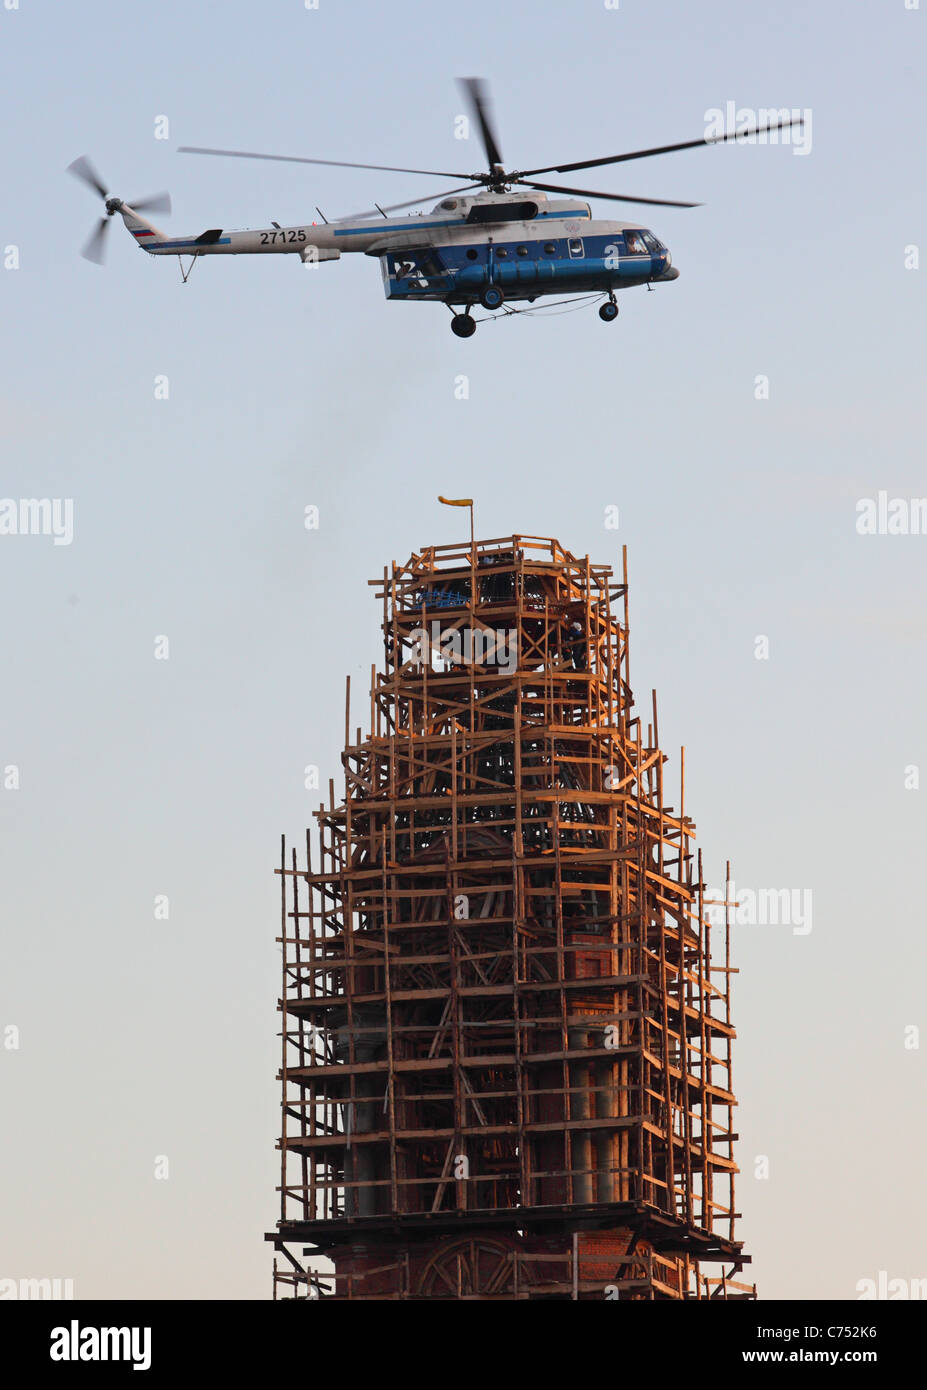 Russland, Tambow, 27. Juli 2011: 20 Meter orthodoxes Kreuz von Mi-8 Hubschrauber unter Bau Turm der Kasaner Kloster gegründet Stockfoto